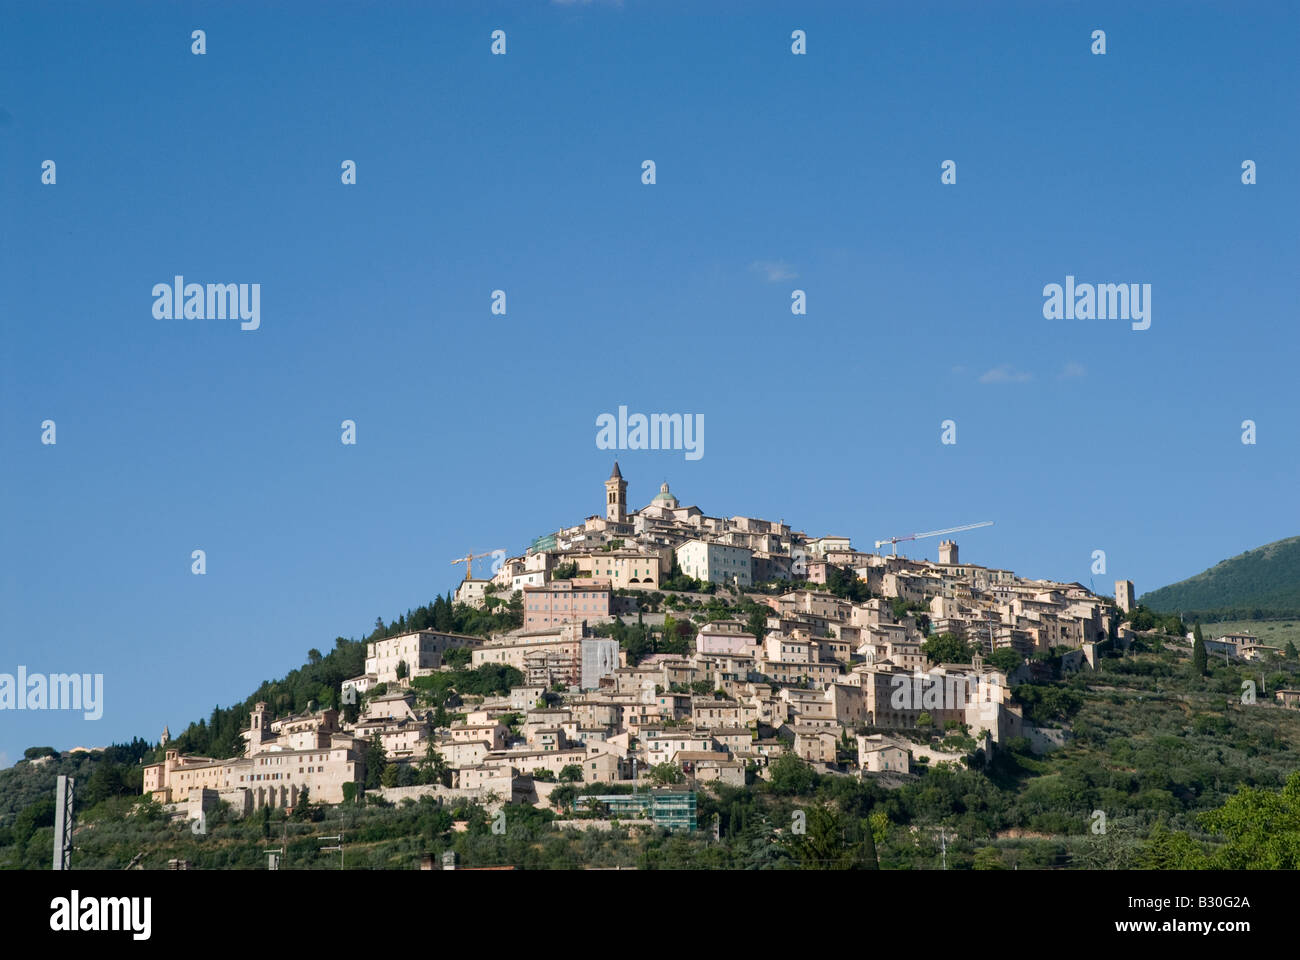 Vue éloignée sur une colline de la ville de Trevi Ombrie, Italie. Élève de Trevi, comme la plupart des villages médiévaux de la région, sur une colline en position dominante de la plaine où coule l'ARCA. Banque D'Images